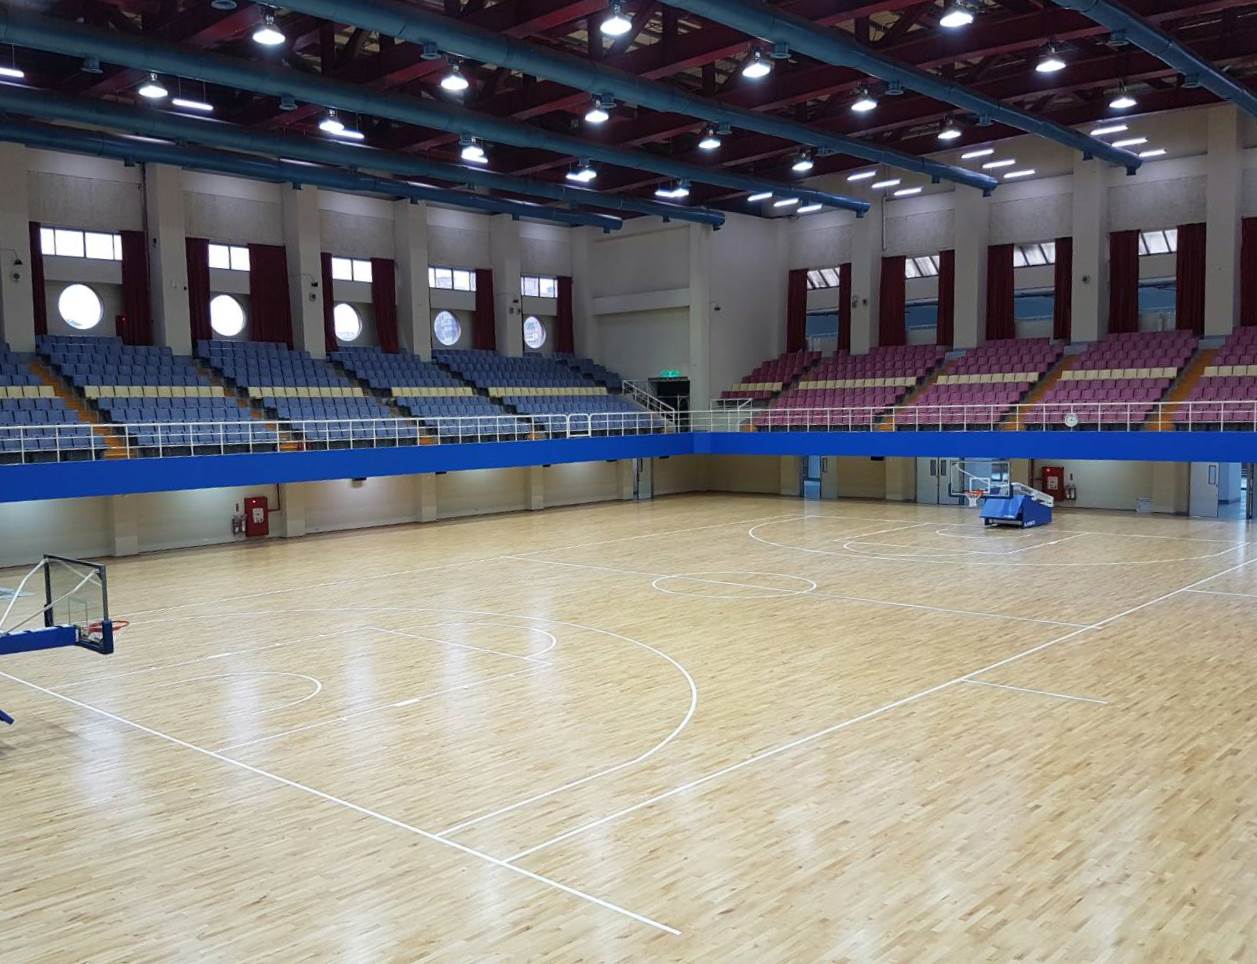 板樹體育館2017世大運籃球競賽練習場